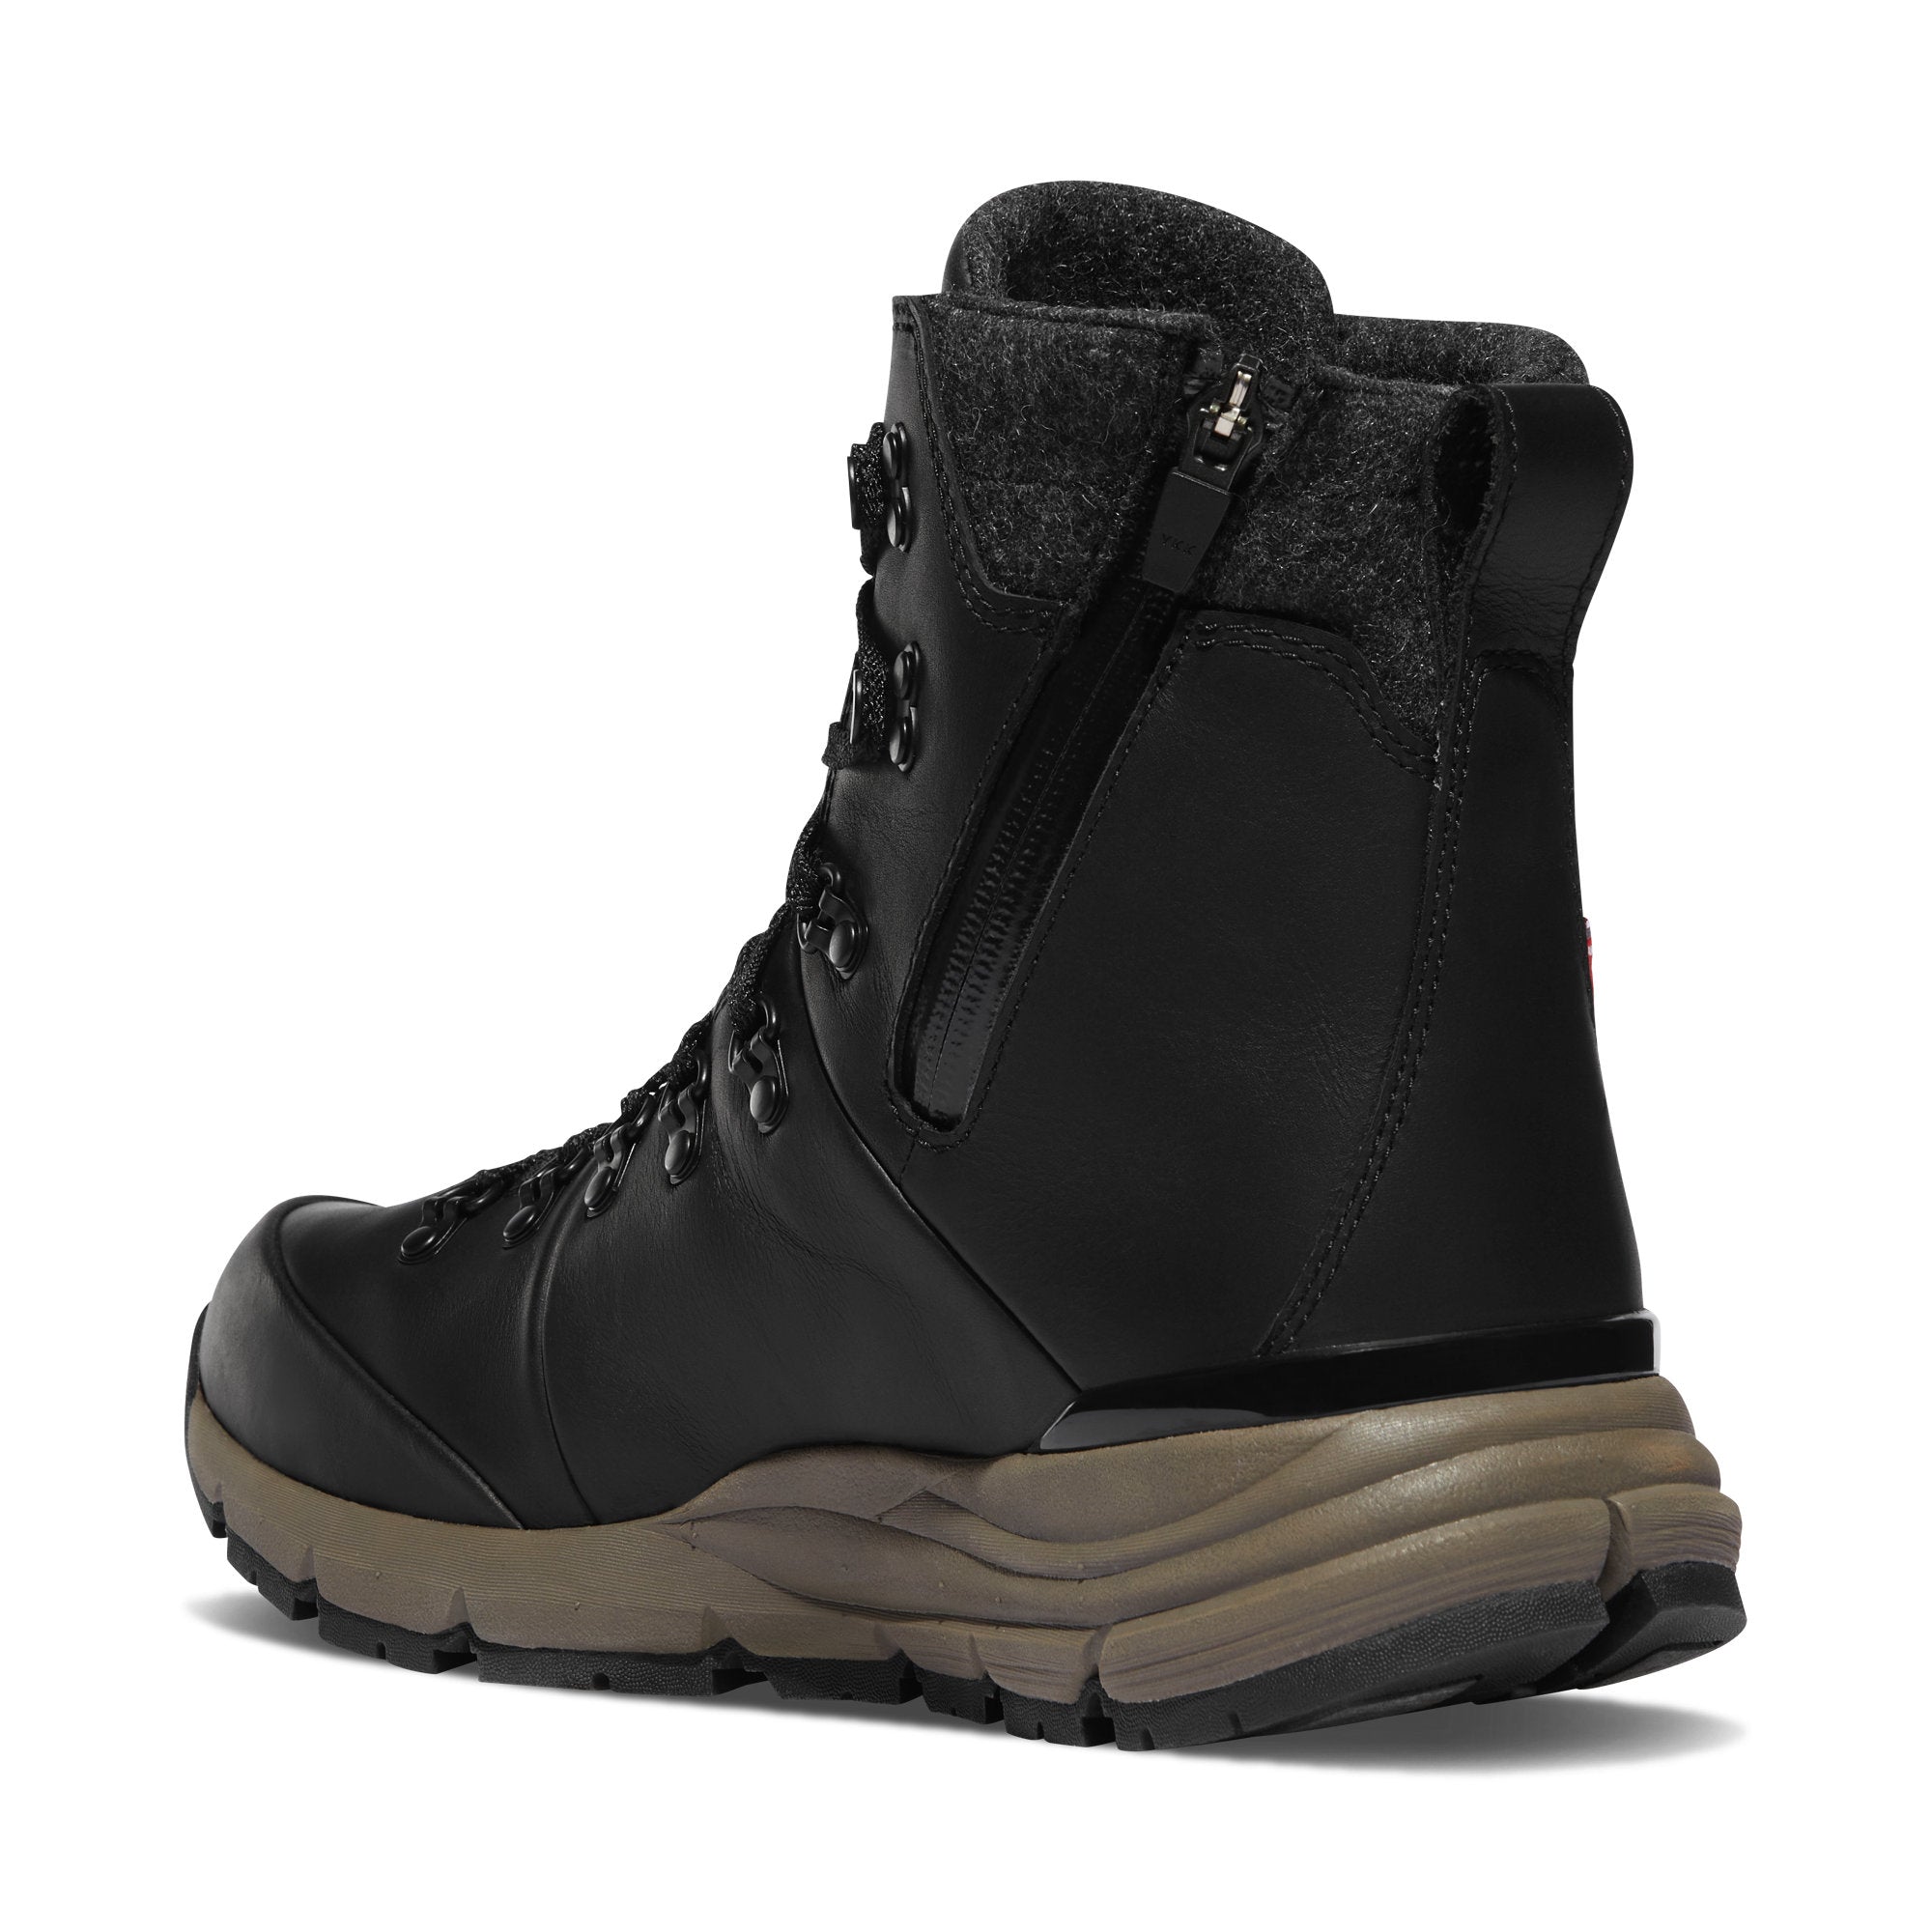 Danner Arctic 600 Side-zip Boots